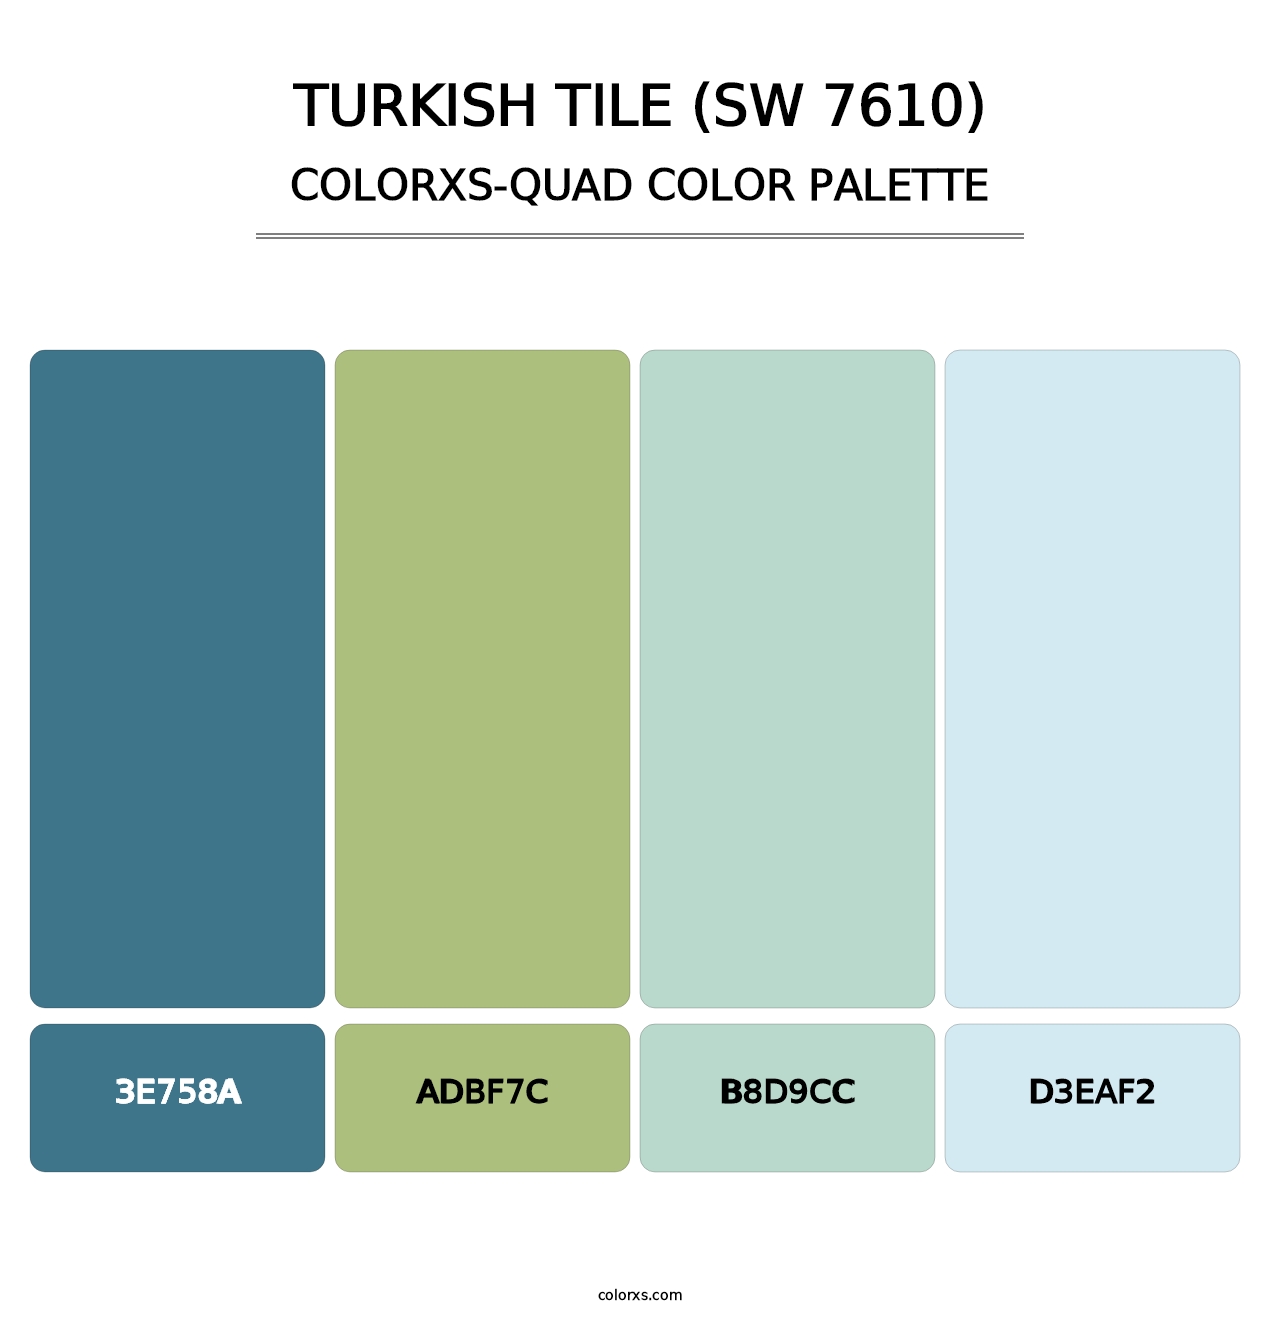 Turkish Tile (SW 7610) - Colorxs Quad Palette